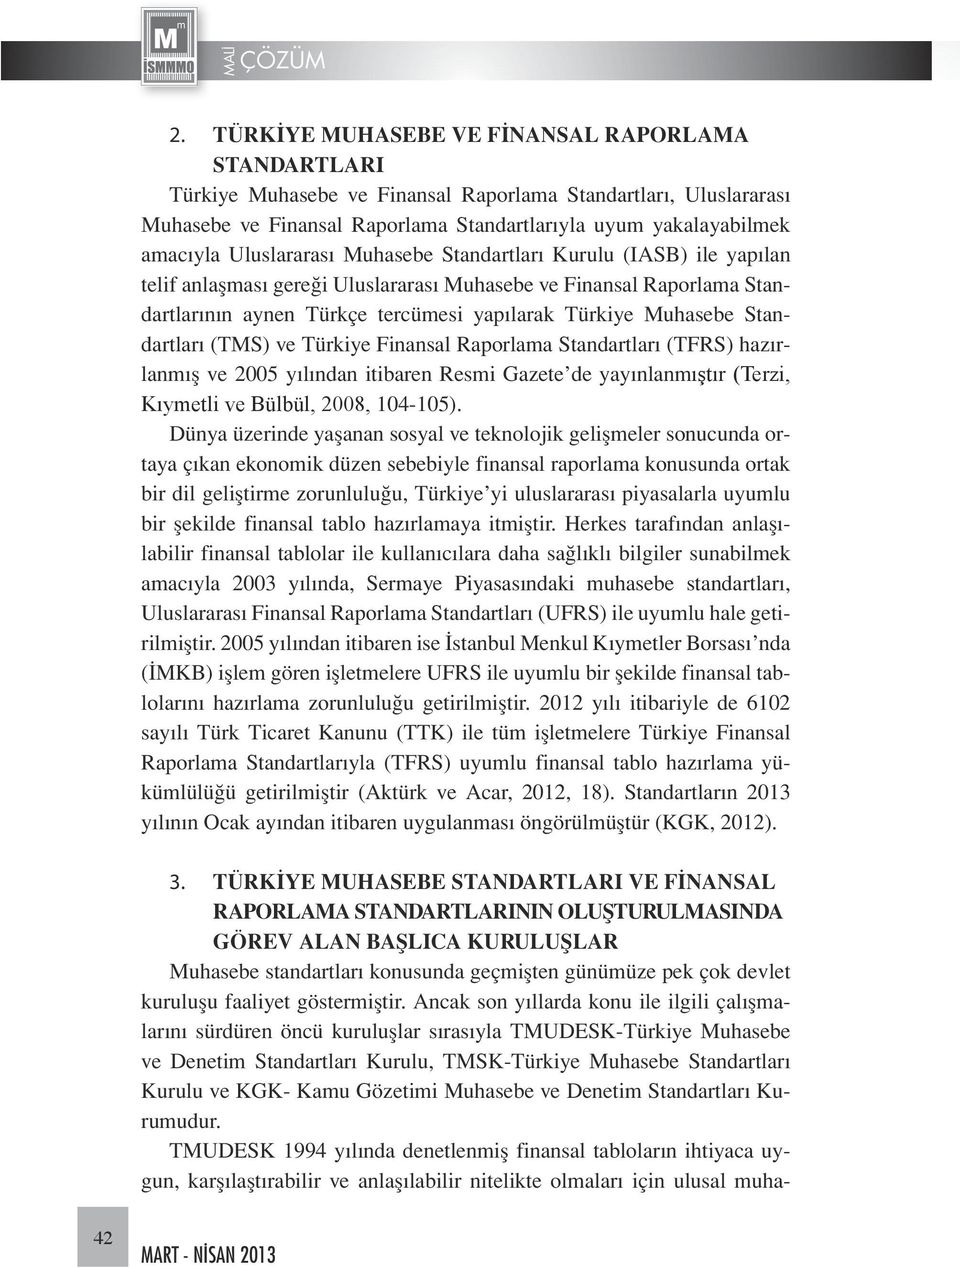 Standartları (TMS) ve Türkiye Finansal Raporlama Standartları (TFRS) hazırlanmış ve 2005 yılından itibaren Resmi Gazete de yayınlanmıştır (Terzi, Kıymetli ve Bülbül, 2008, 104-105).